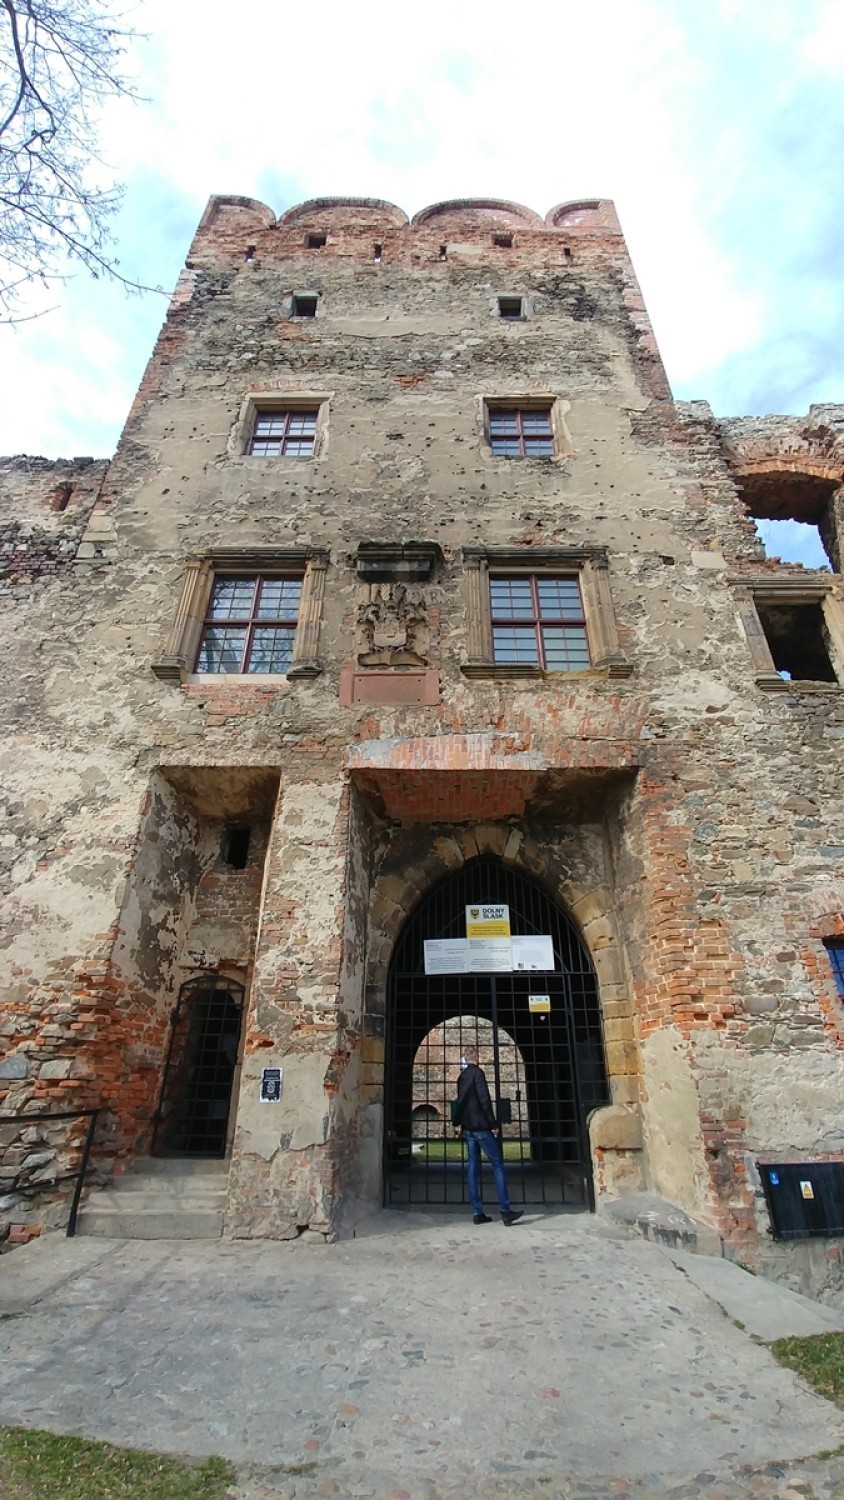 Ruiny zamku w Ząbkowicach Śląskich